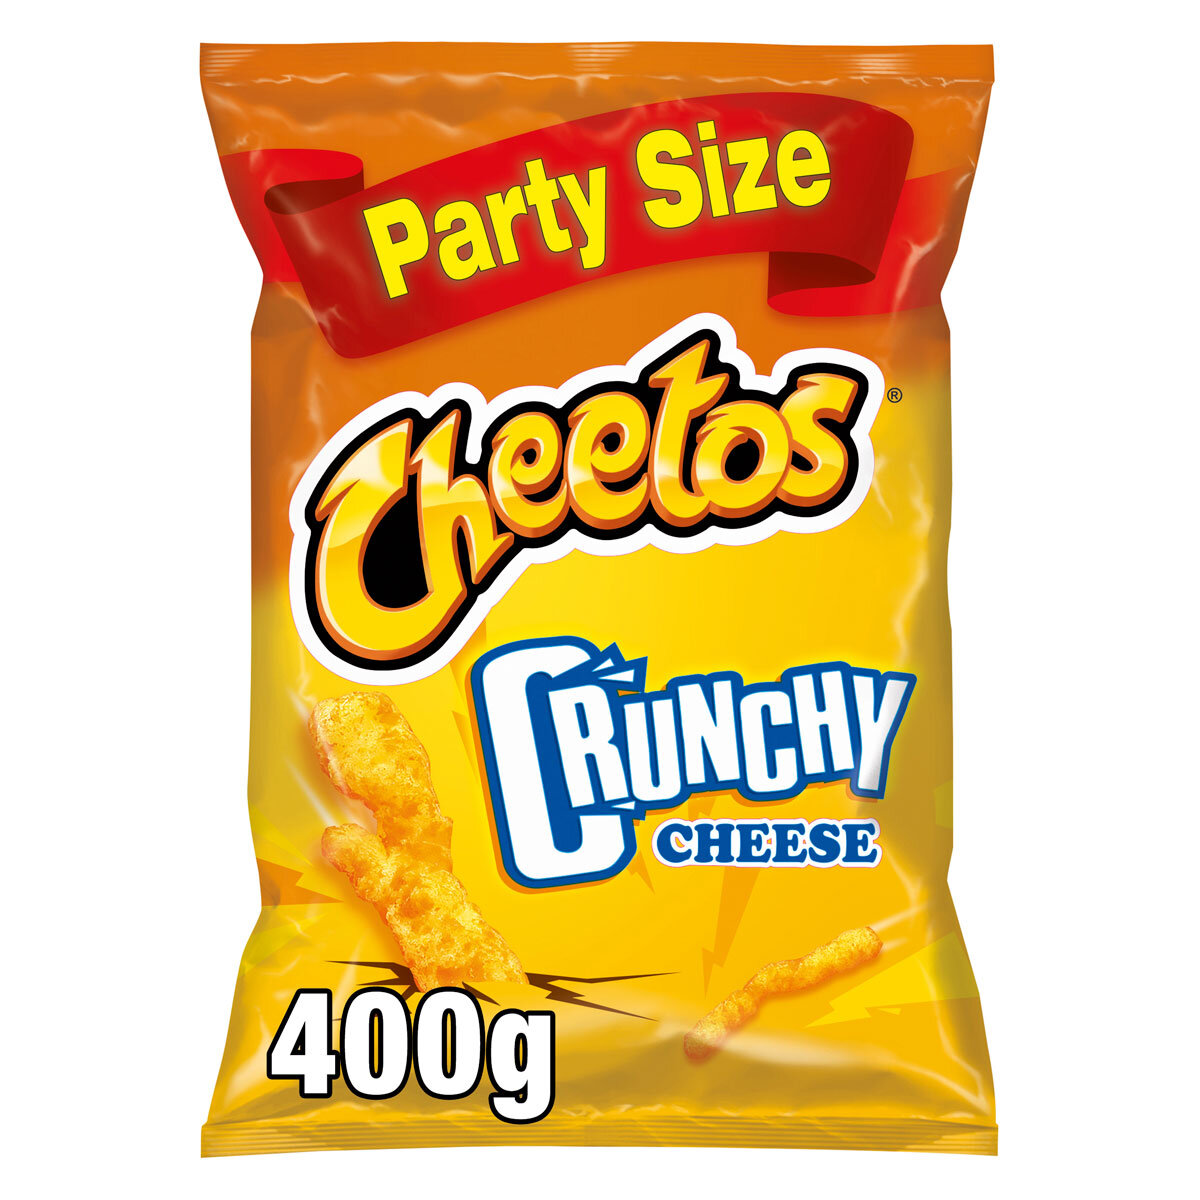 Cheetos Crunchy Cheese, 2 x 400g